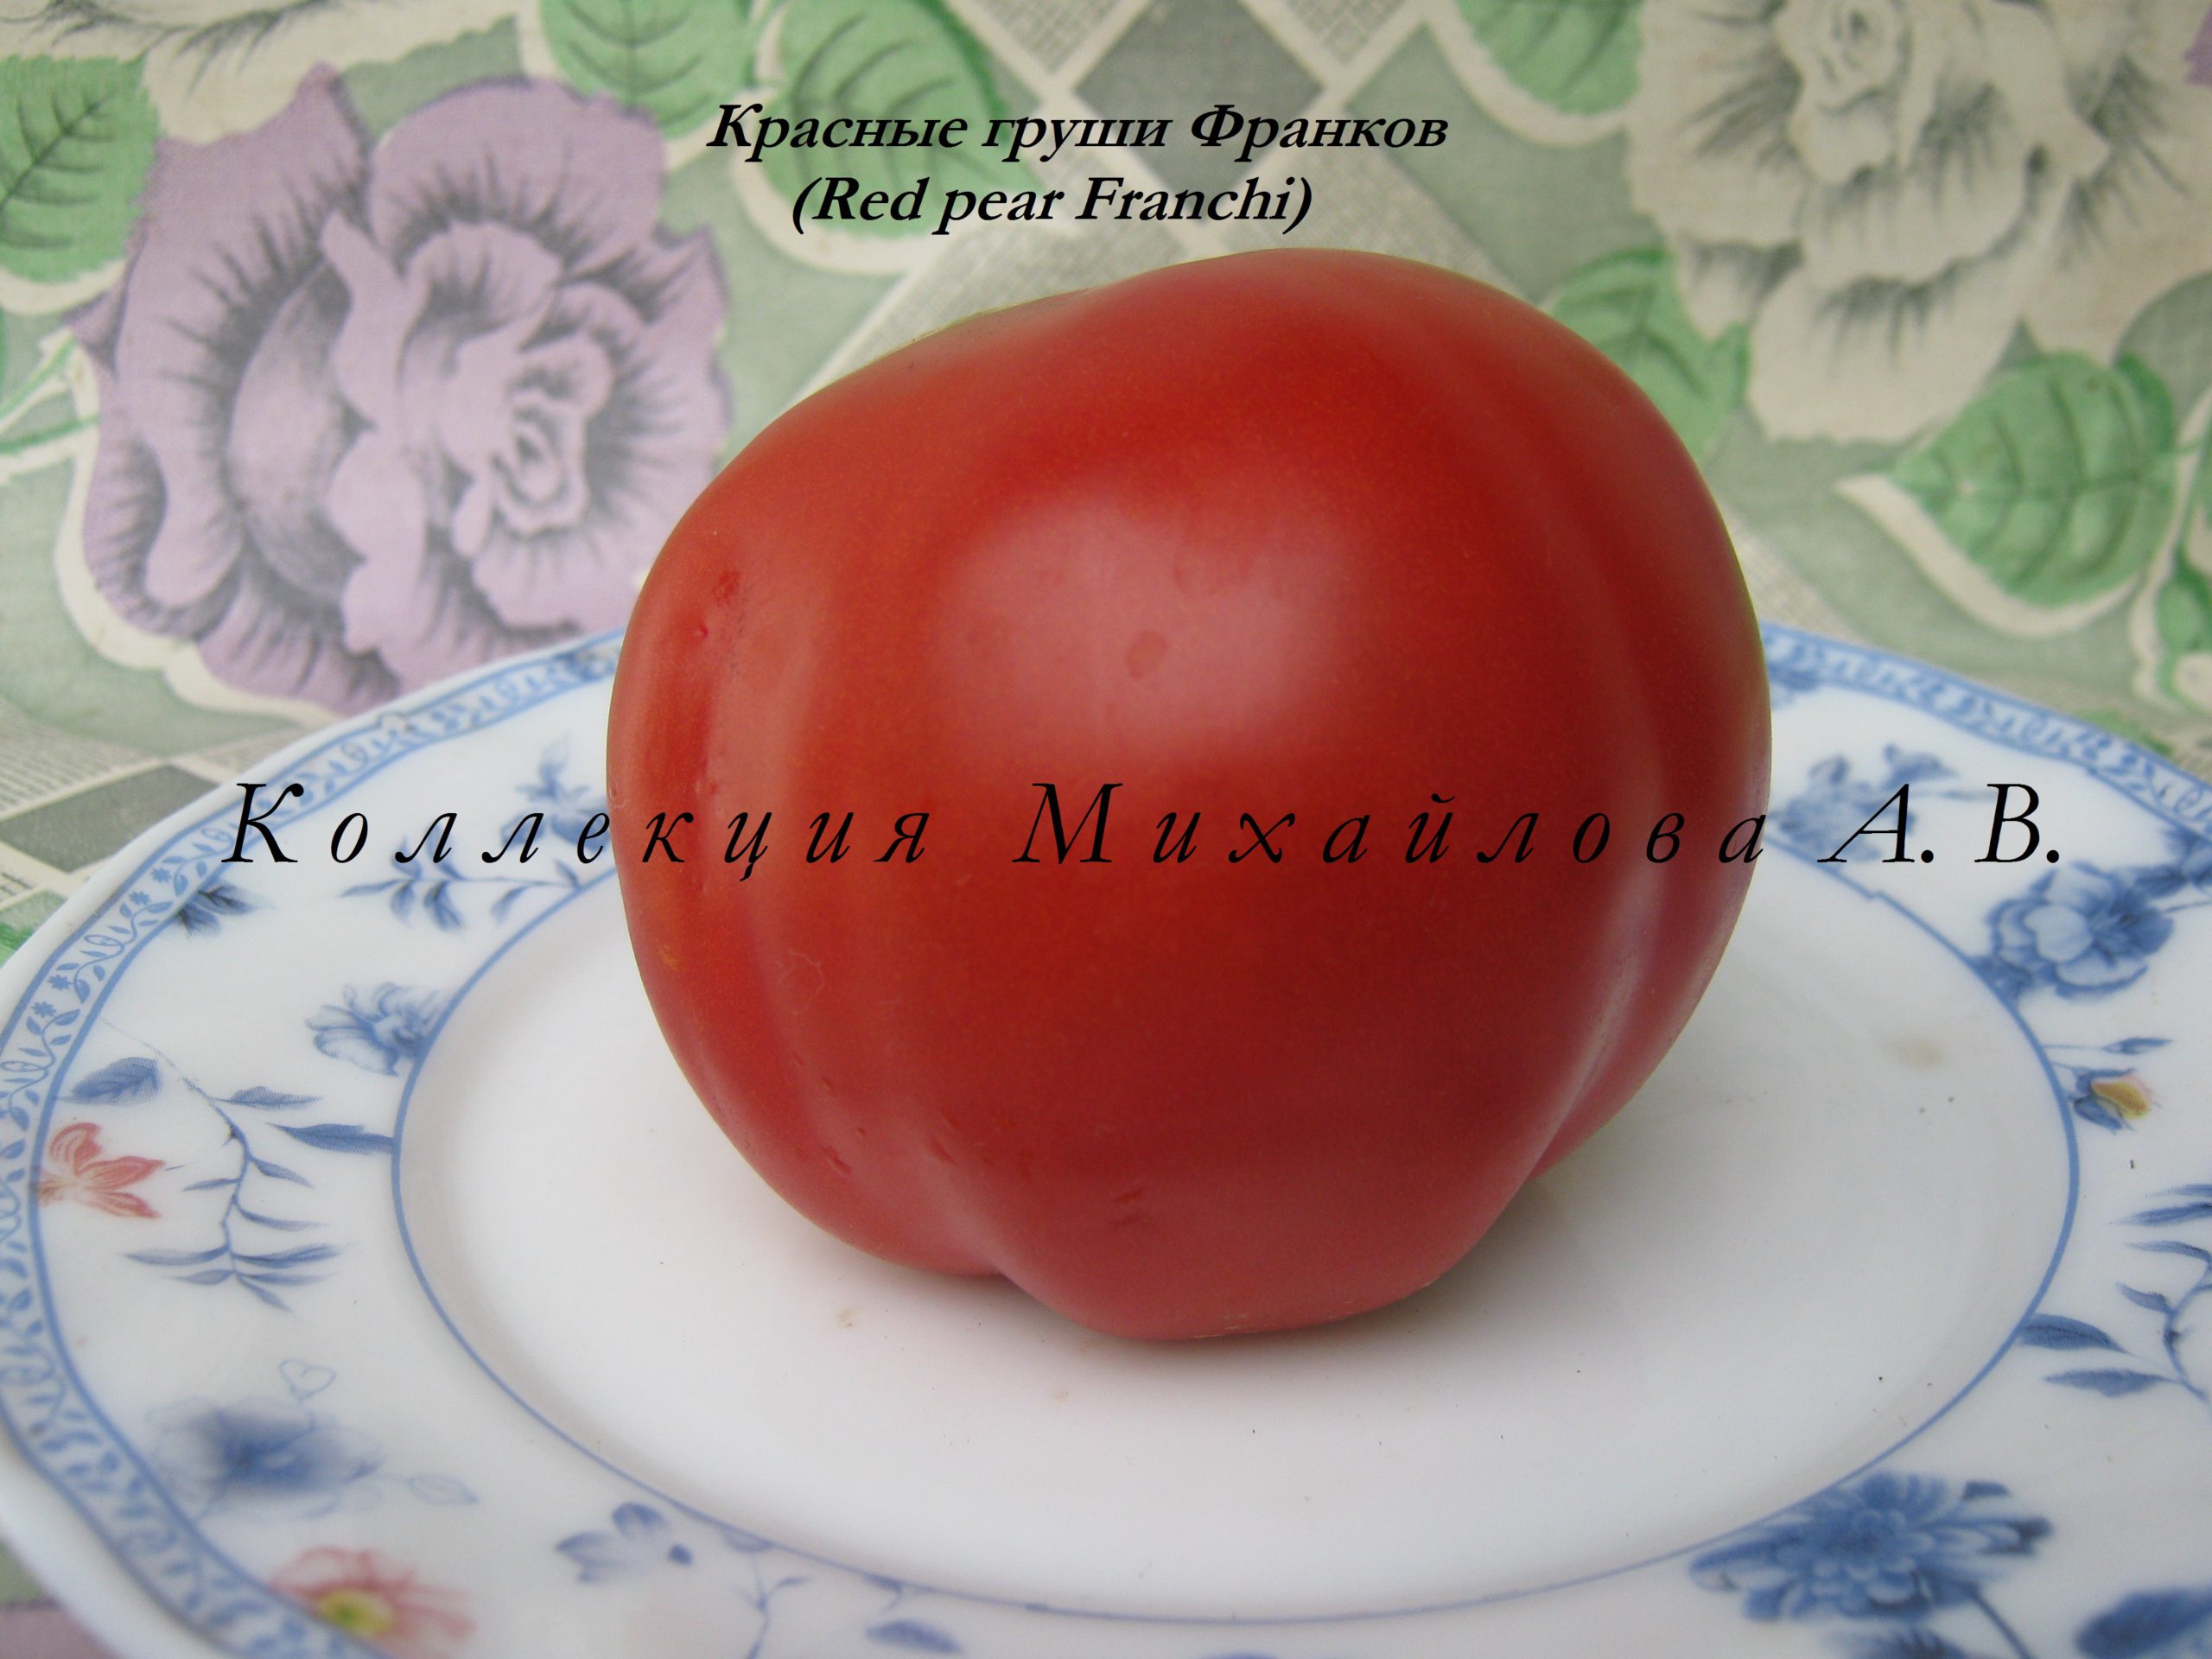 Красная груша франки томат фото